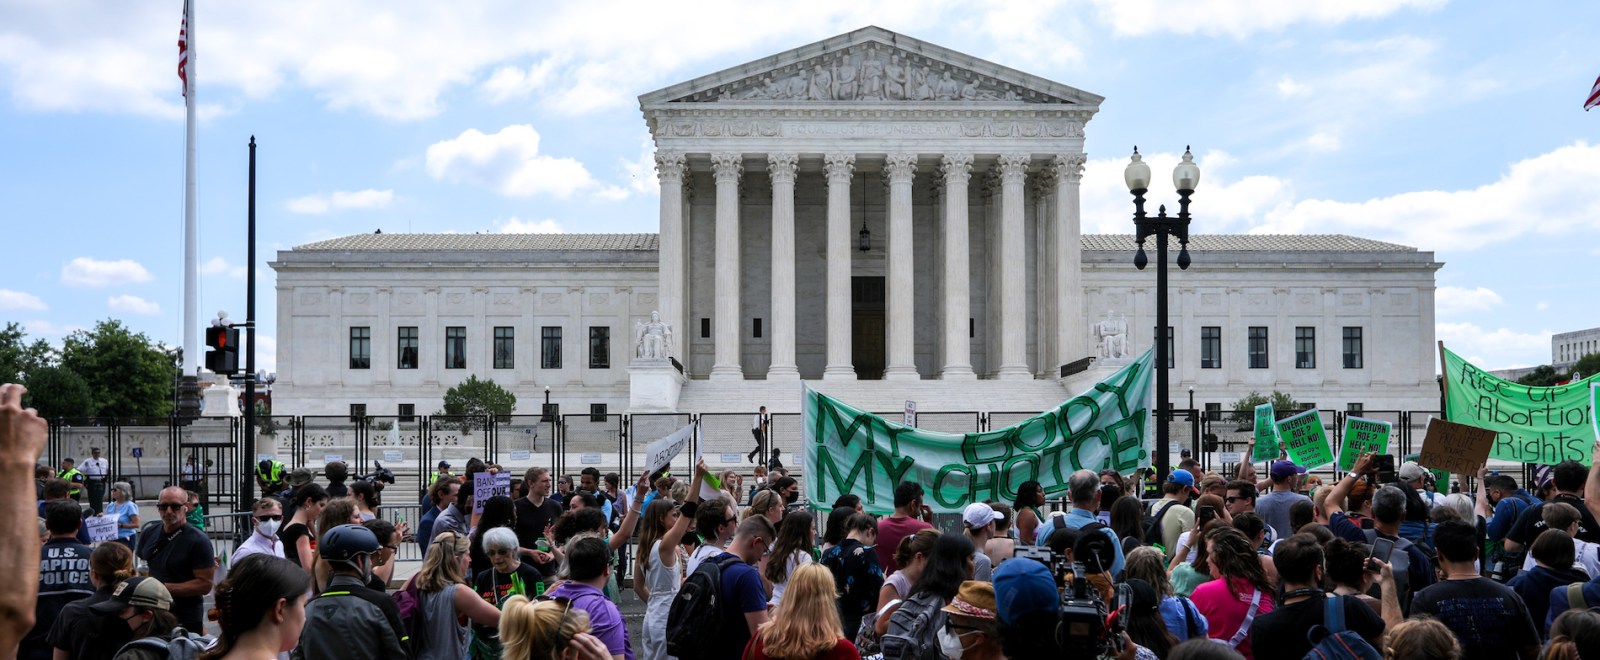 US Supreme Court Roe v Wade Protestors 2022